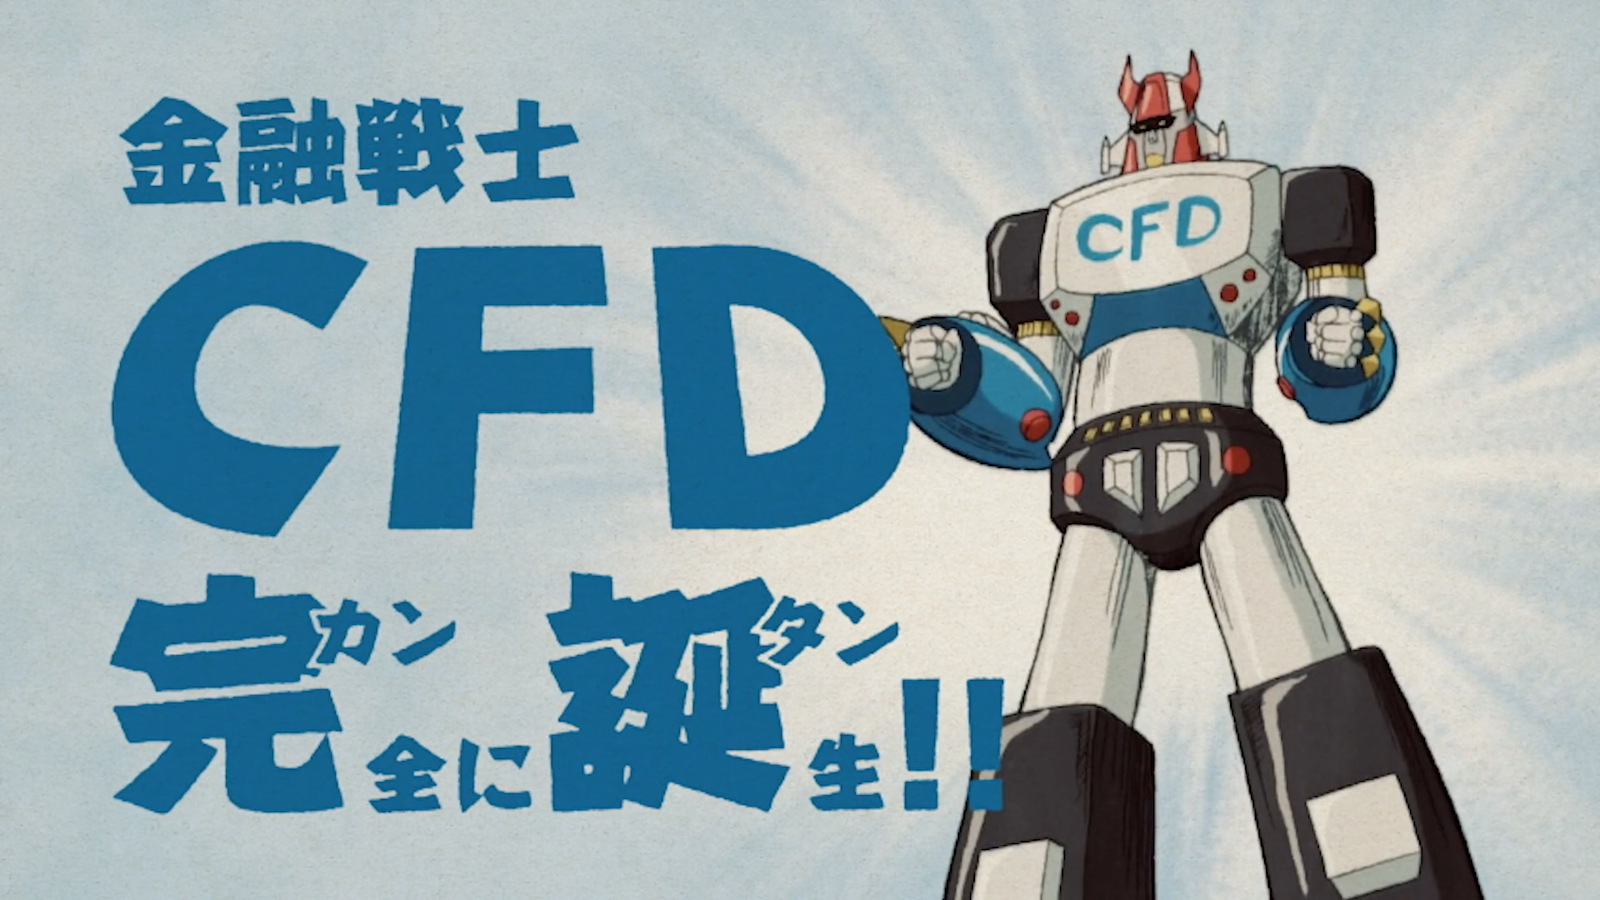 「金融戦士CFD」